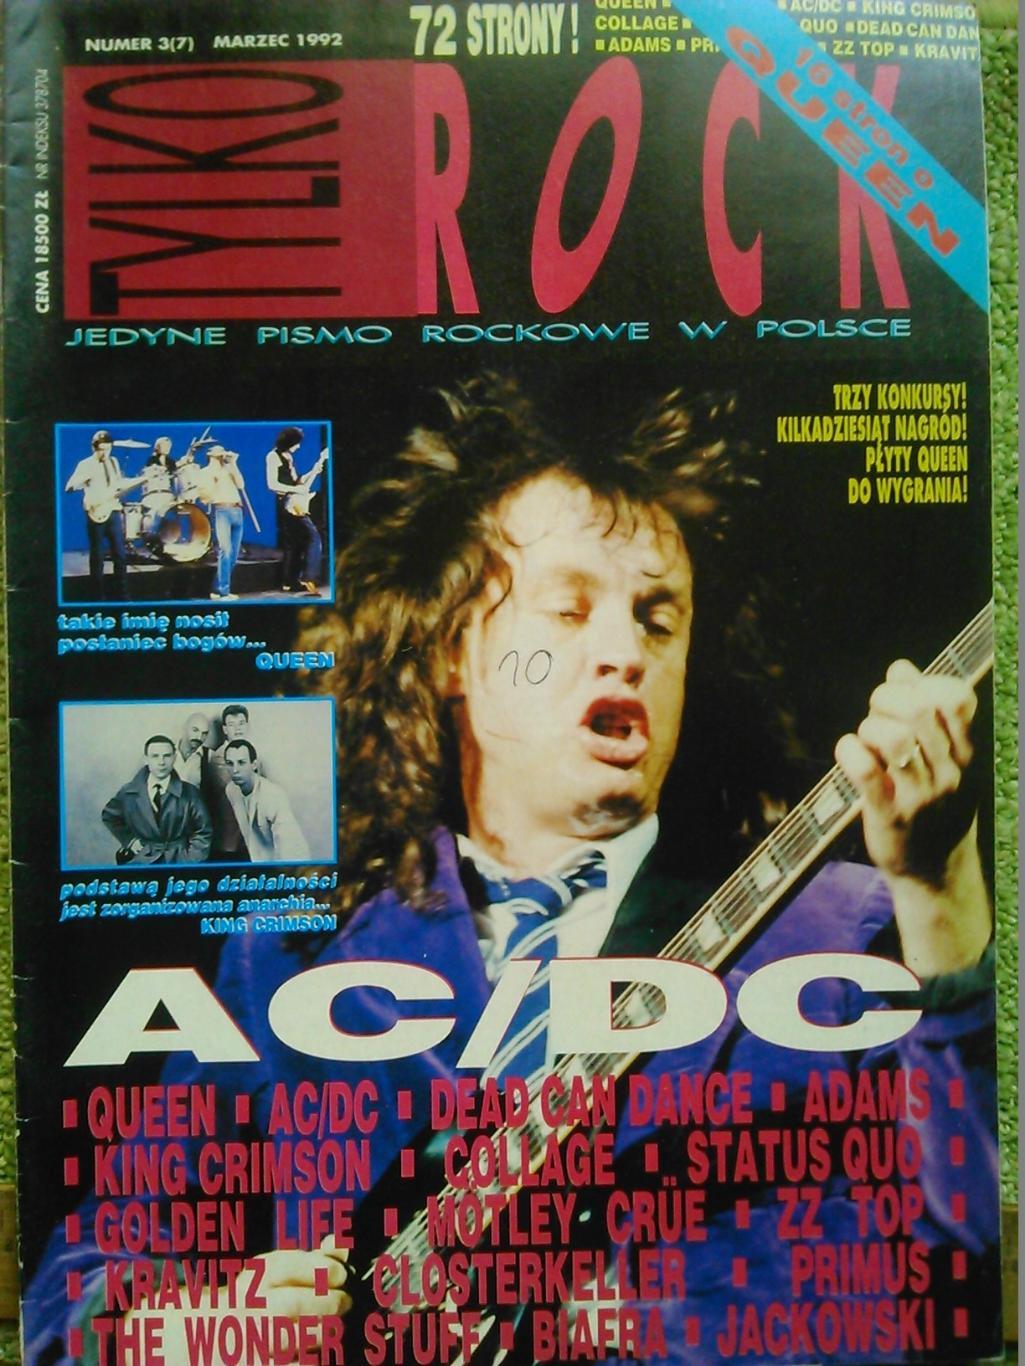 TYLKO ROCK (Только Рок) №3 (7) 1992. Польша. AC/DC.. Оптом скидки до 50%.